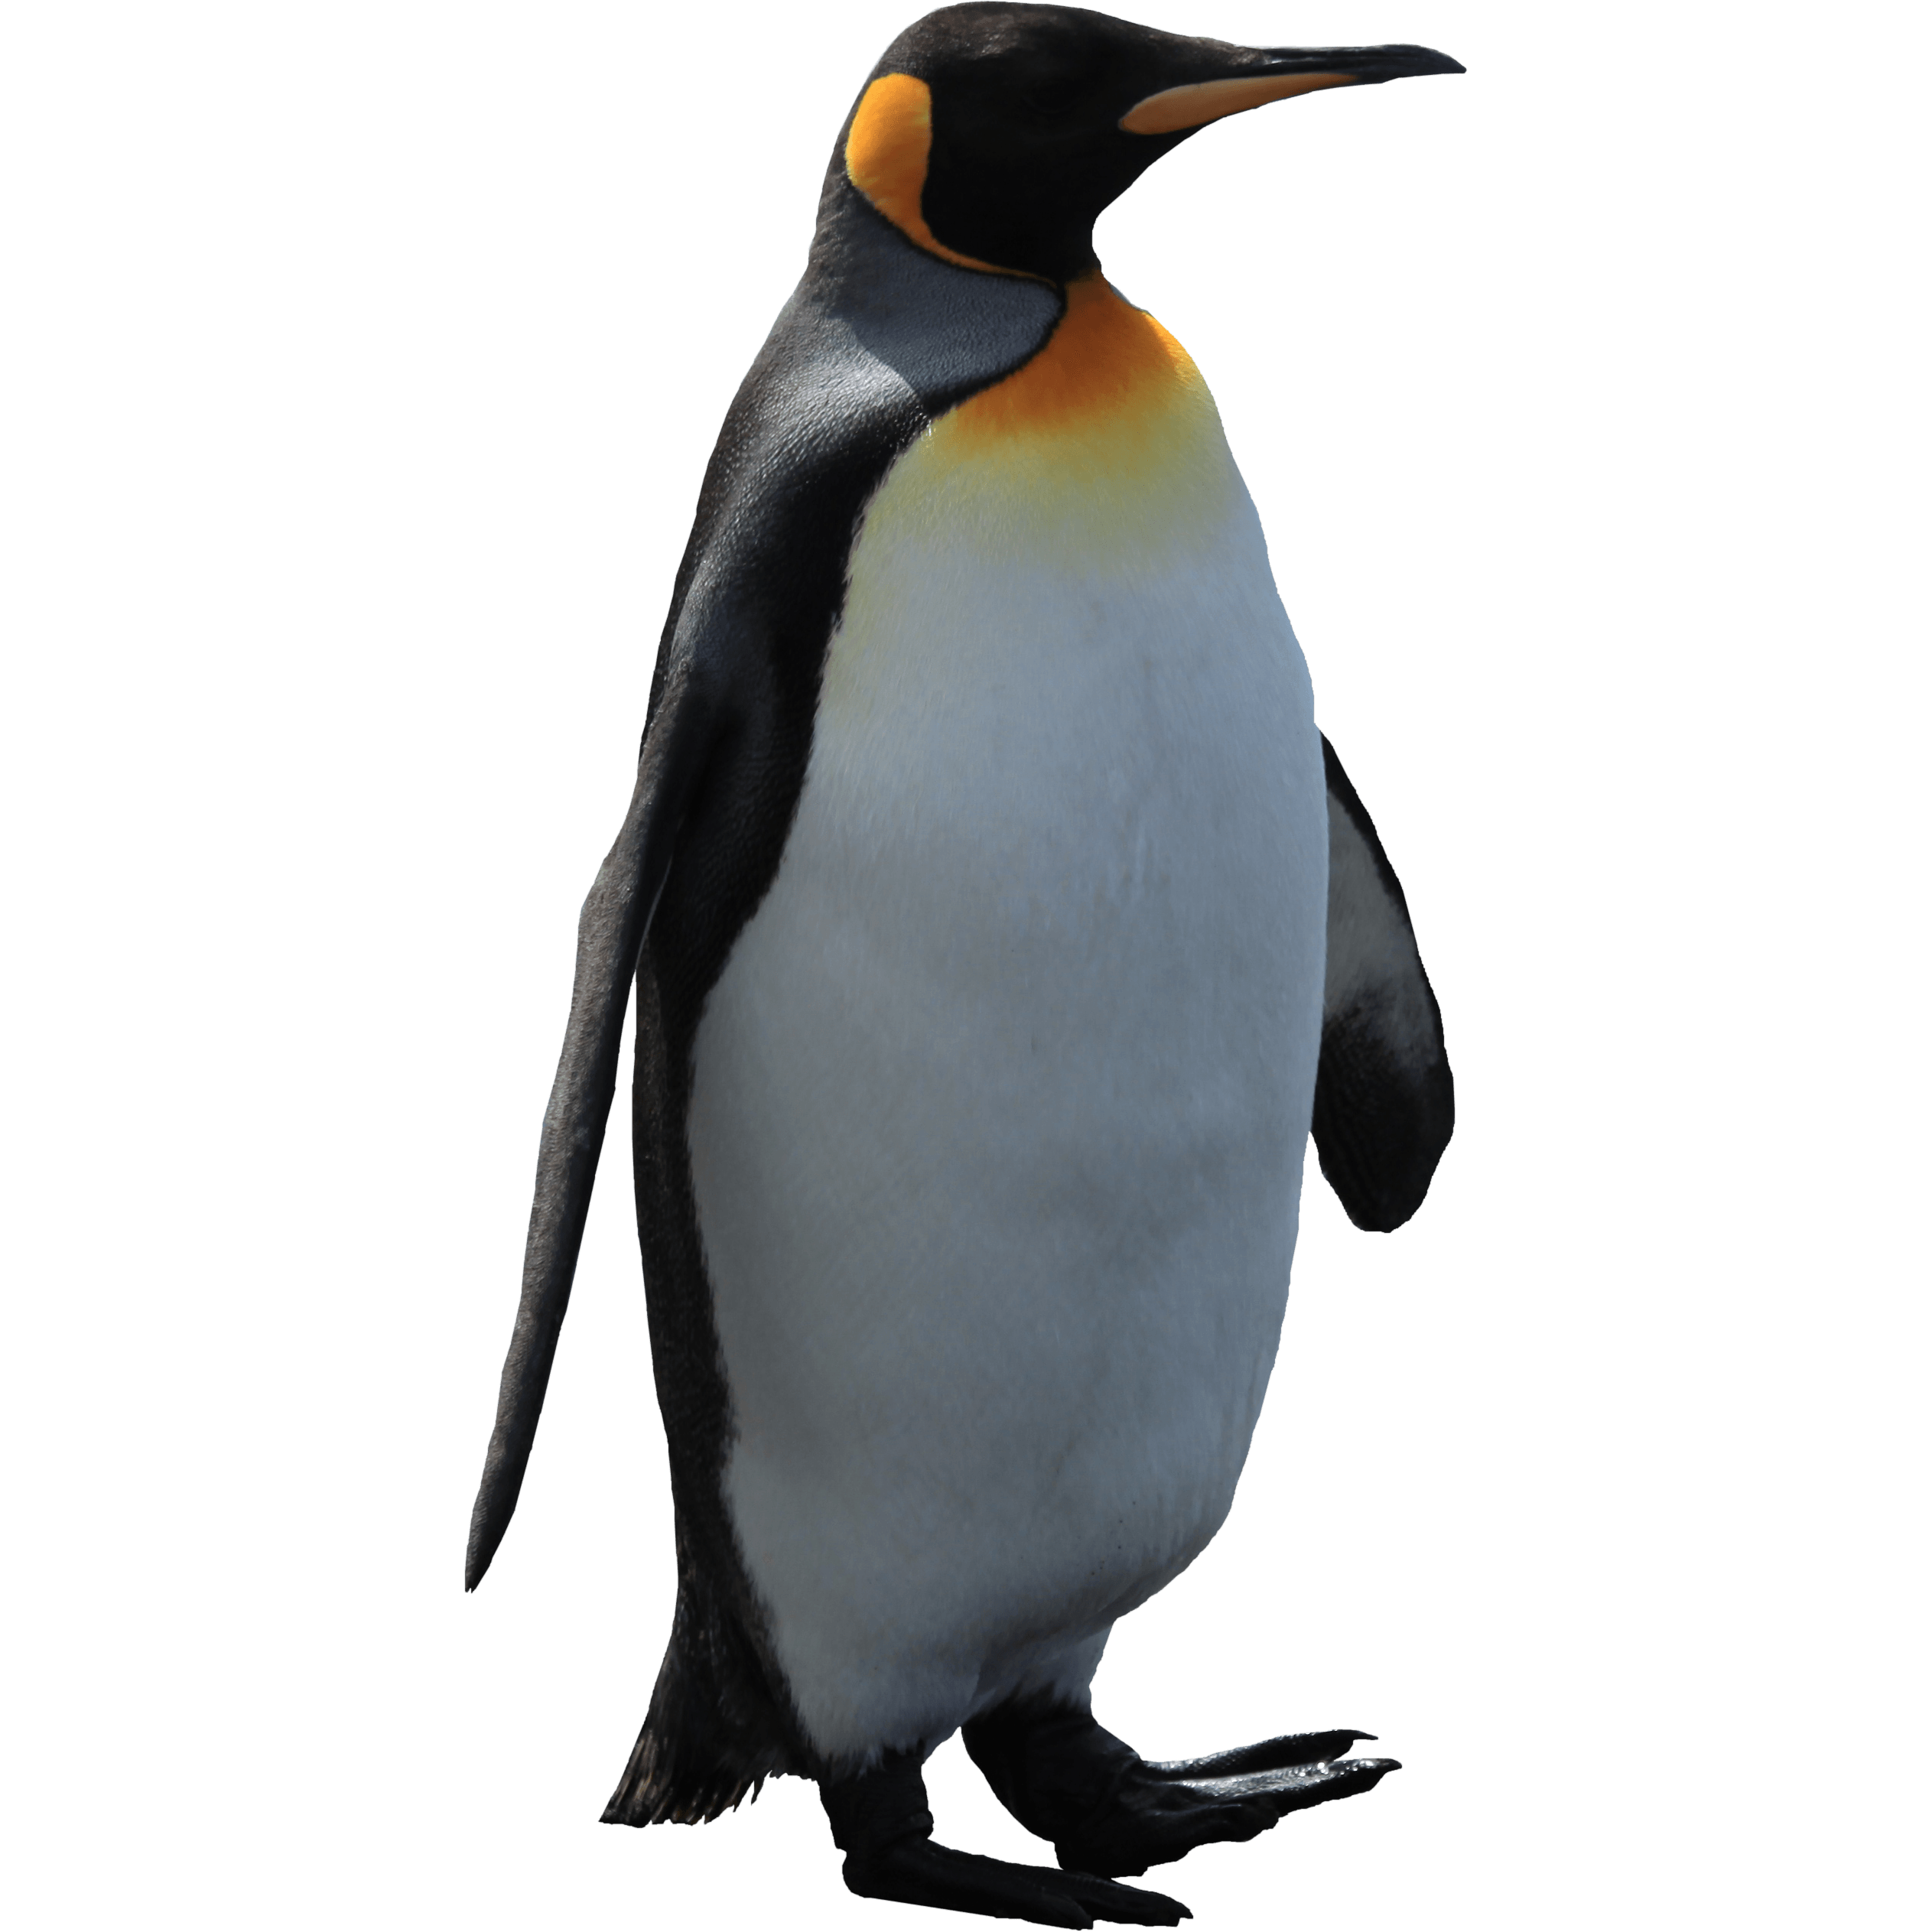 clipart penguin transparent background